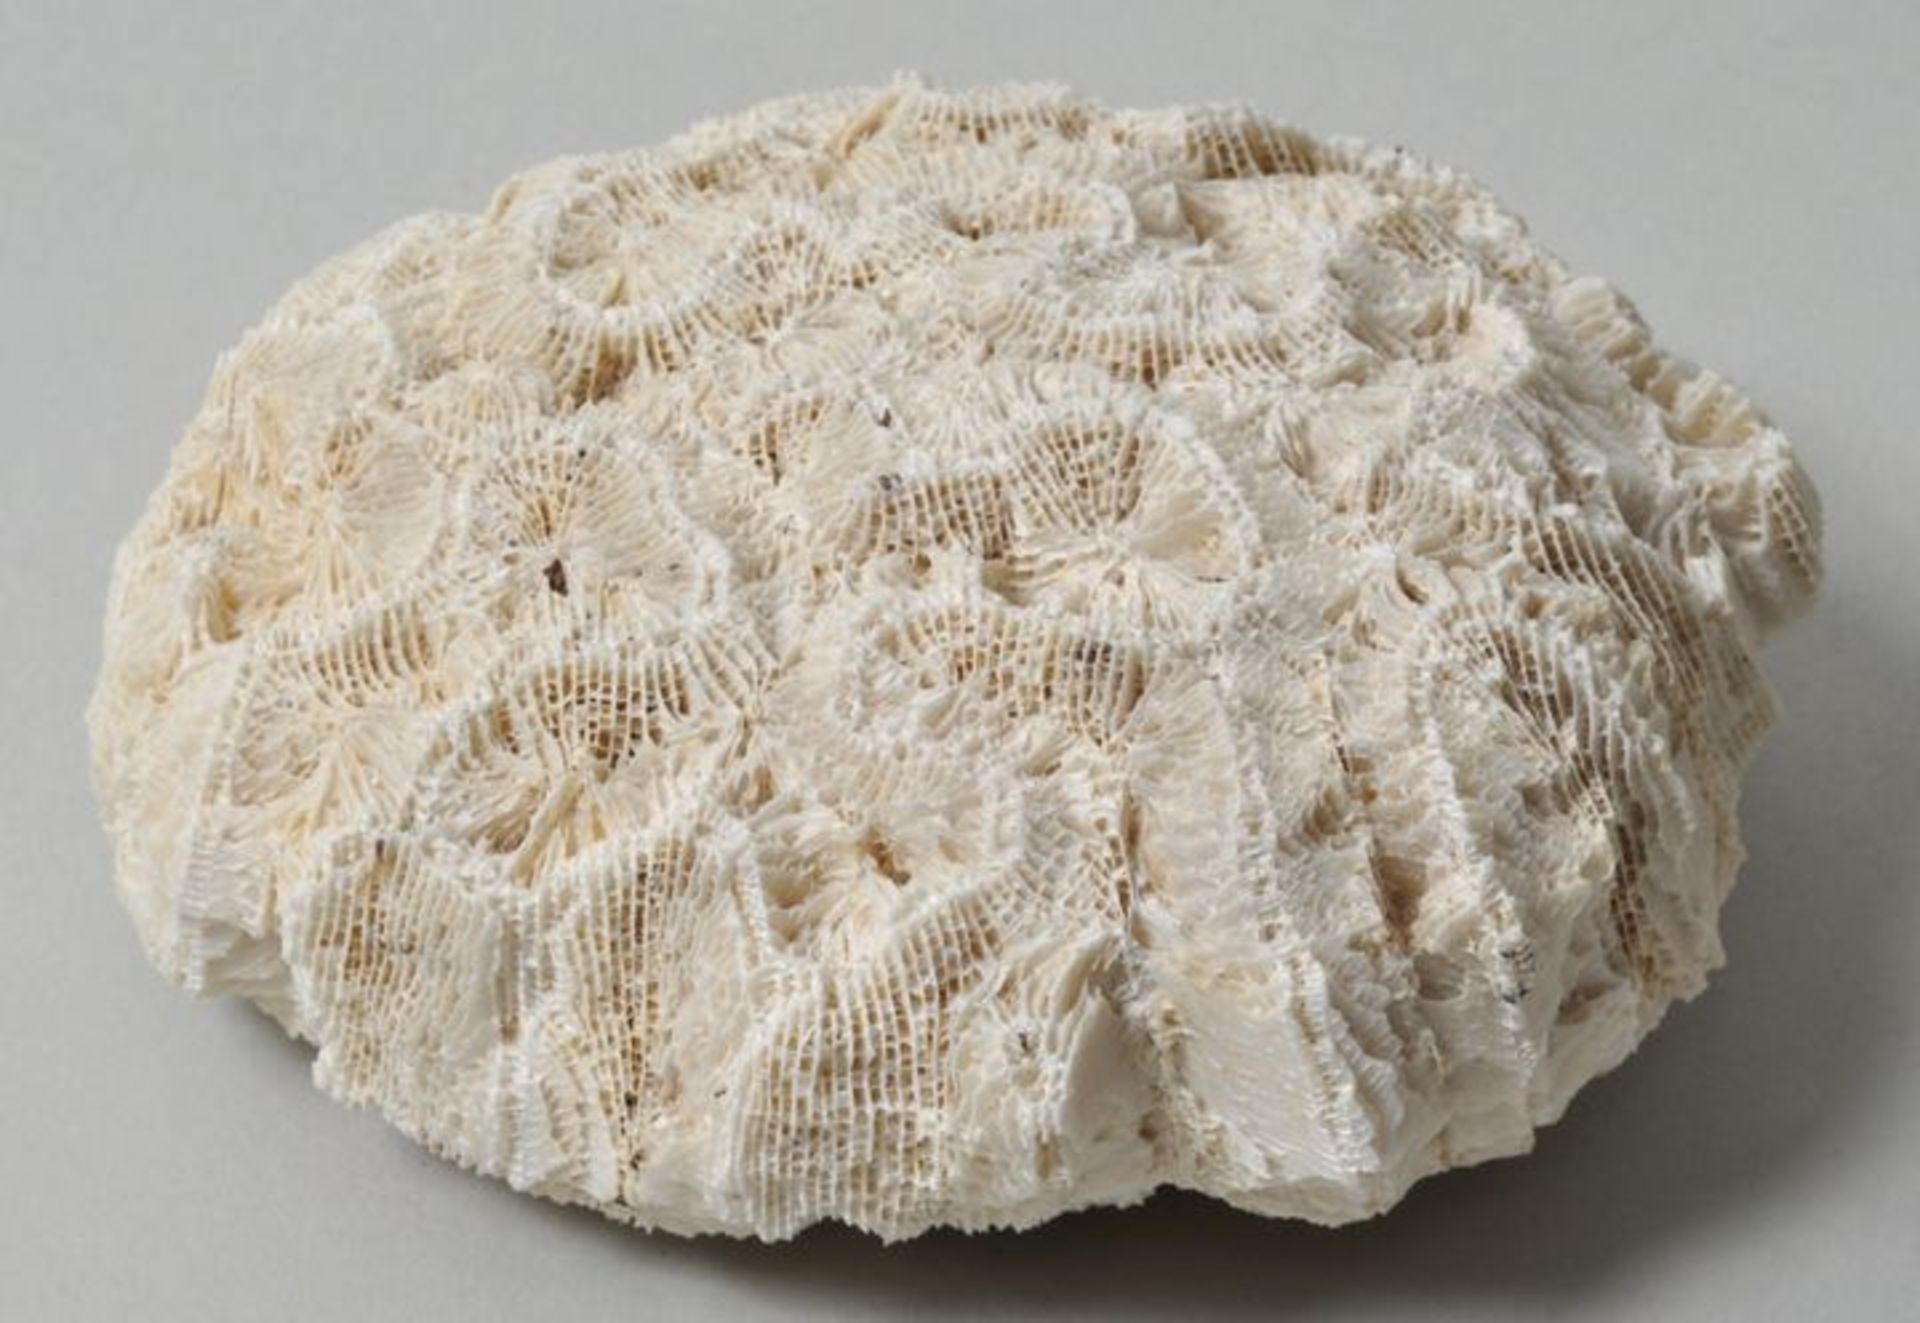 Versteinerung einer Koralle.Kissenartig versteinerte Koralle. Wohl Trias. D. 11 cm.- - -25.00 %